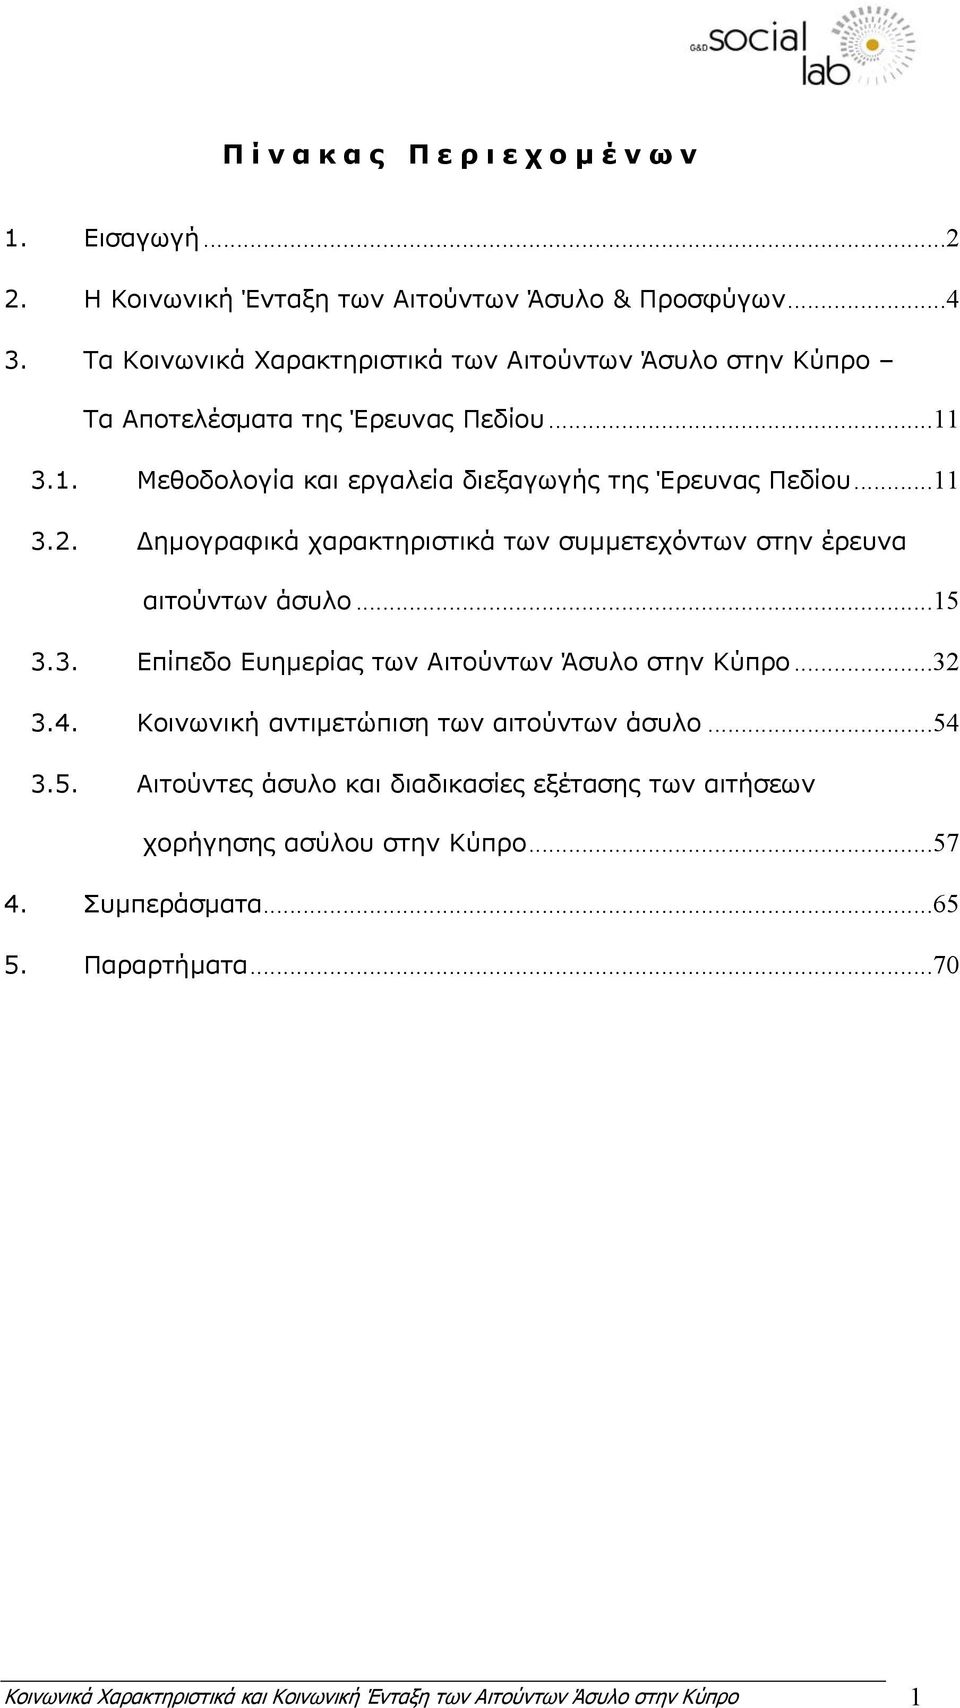 ηµογραφικά χαρακτηριστικά των συµµετεχόντων στην έρευνα αιτούντων άσυλο...15 3.3. Επίπεδο Ευηµερίας των Αιτούντων Άσυλο στην Κύπρο...32 3.4.